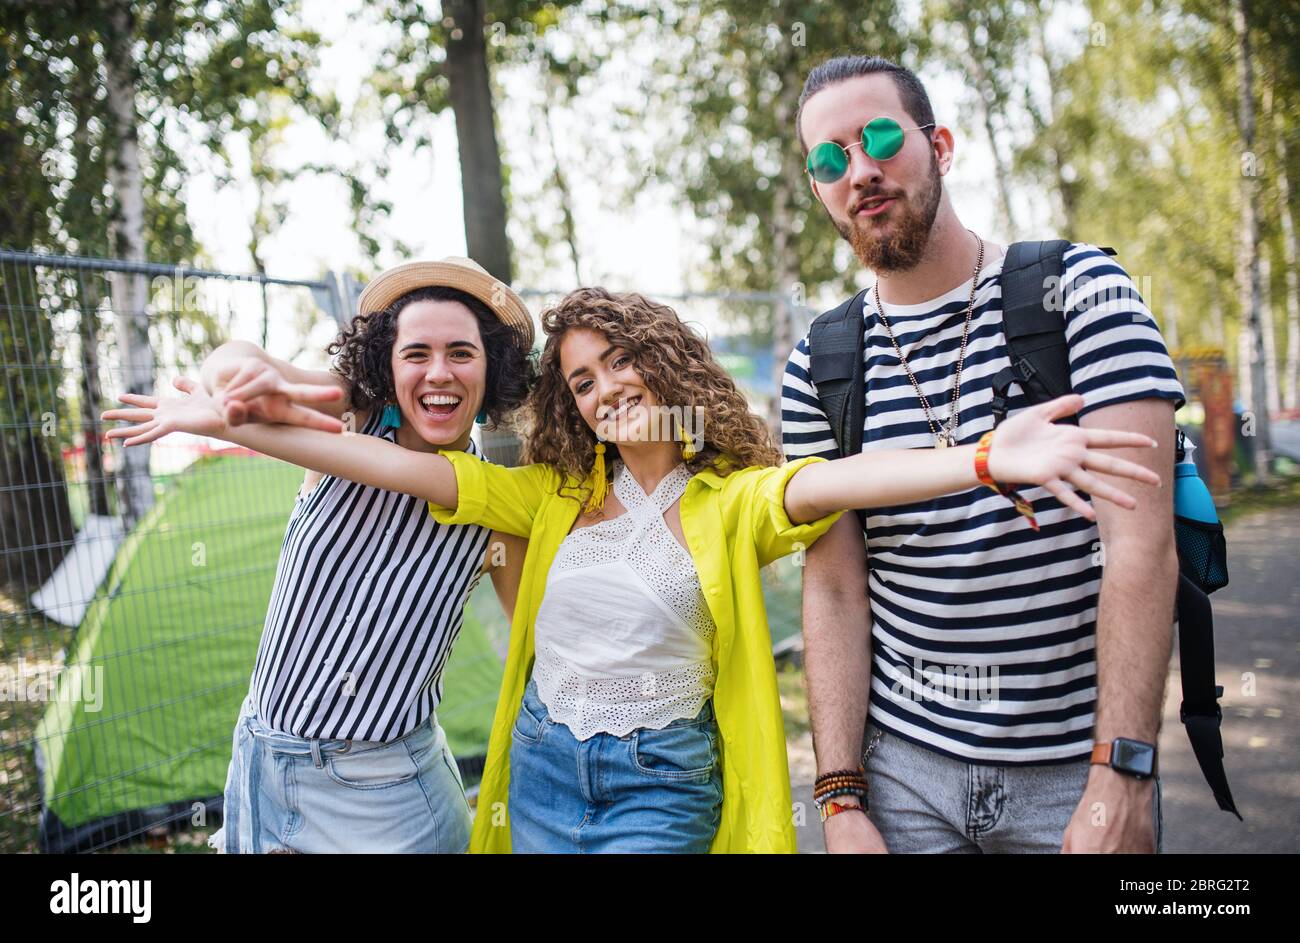 Gruppe von jungen Menschen auf Sommerfest, Blick auf die Kamera. Stockfoto